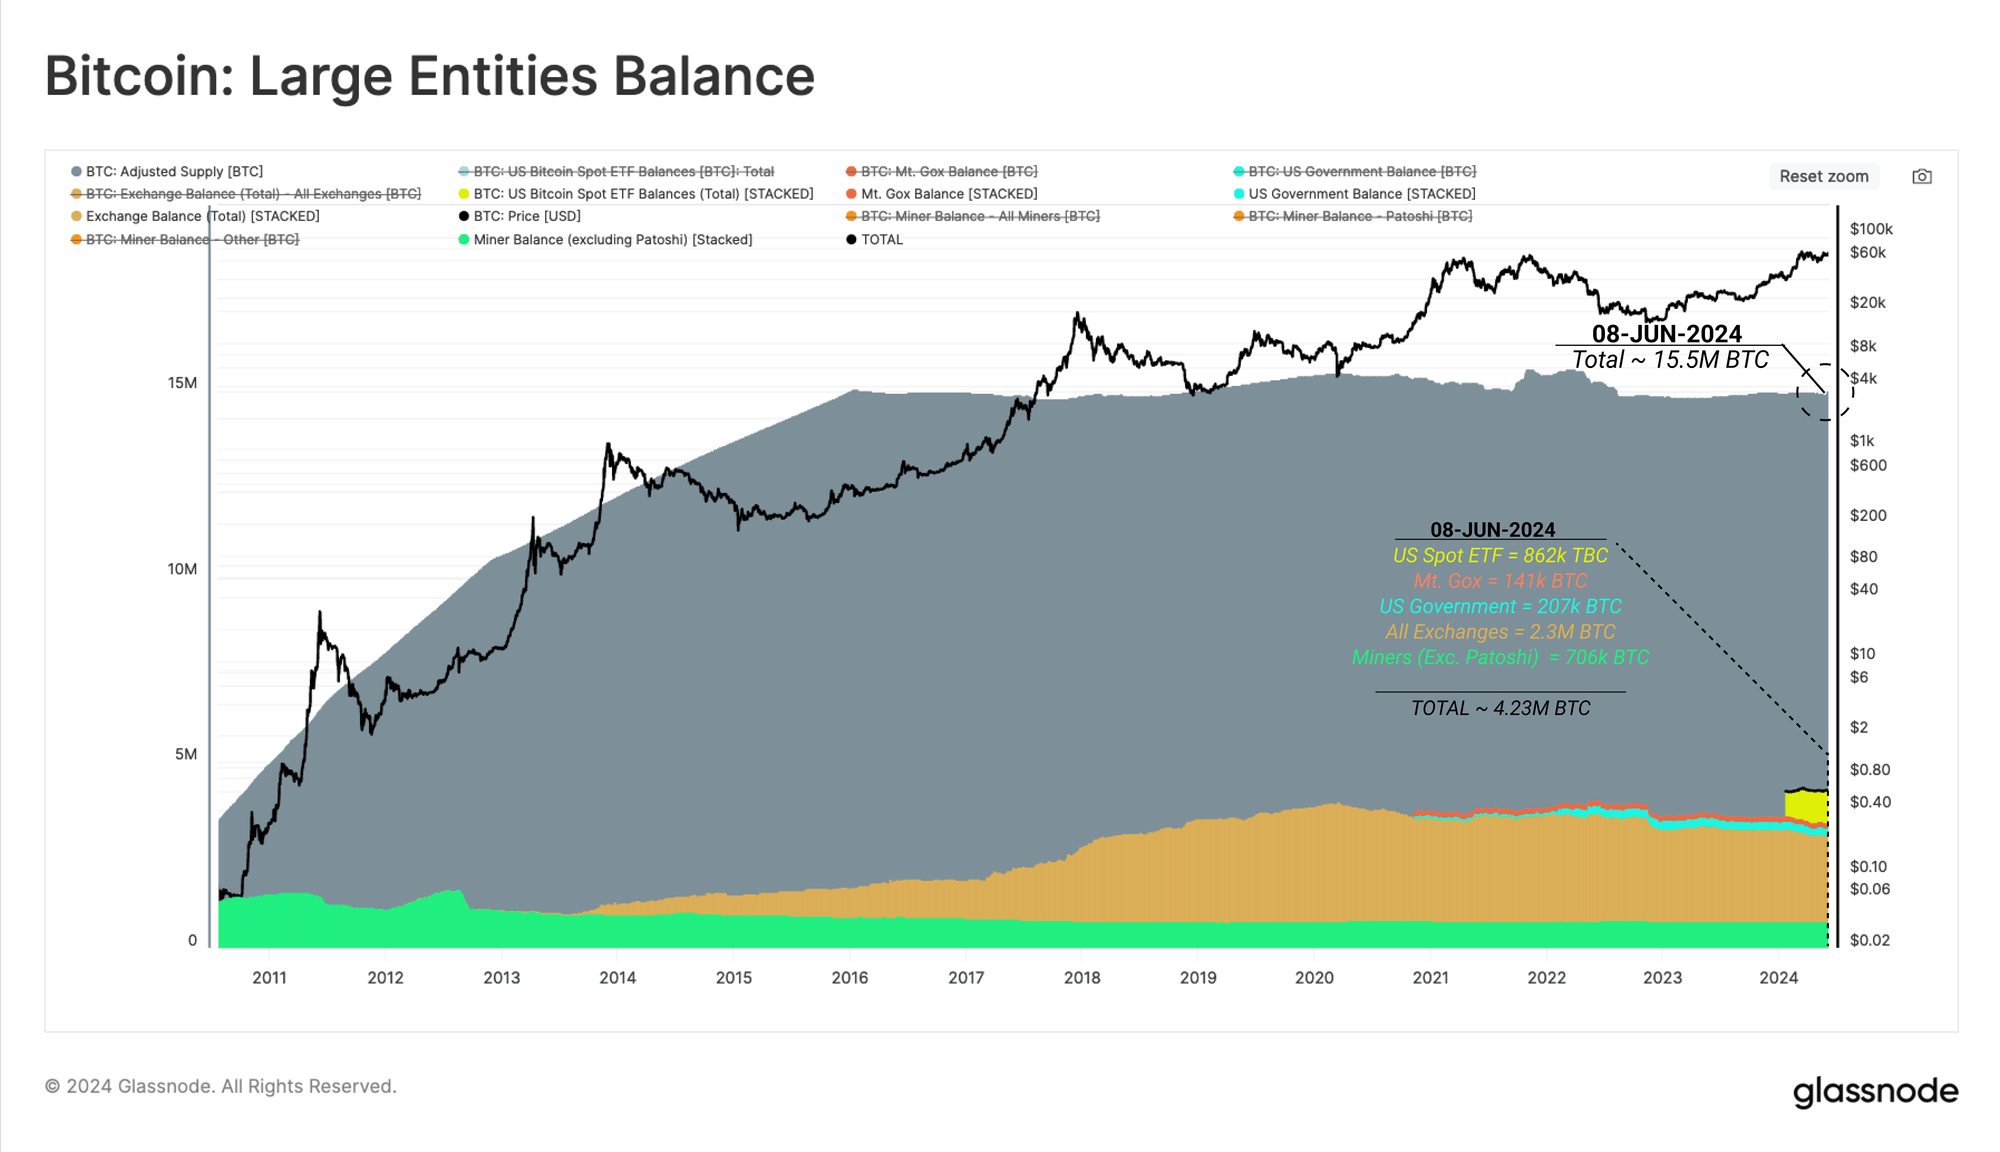 Bitcoin Spot ETF Balance